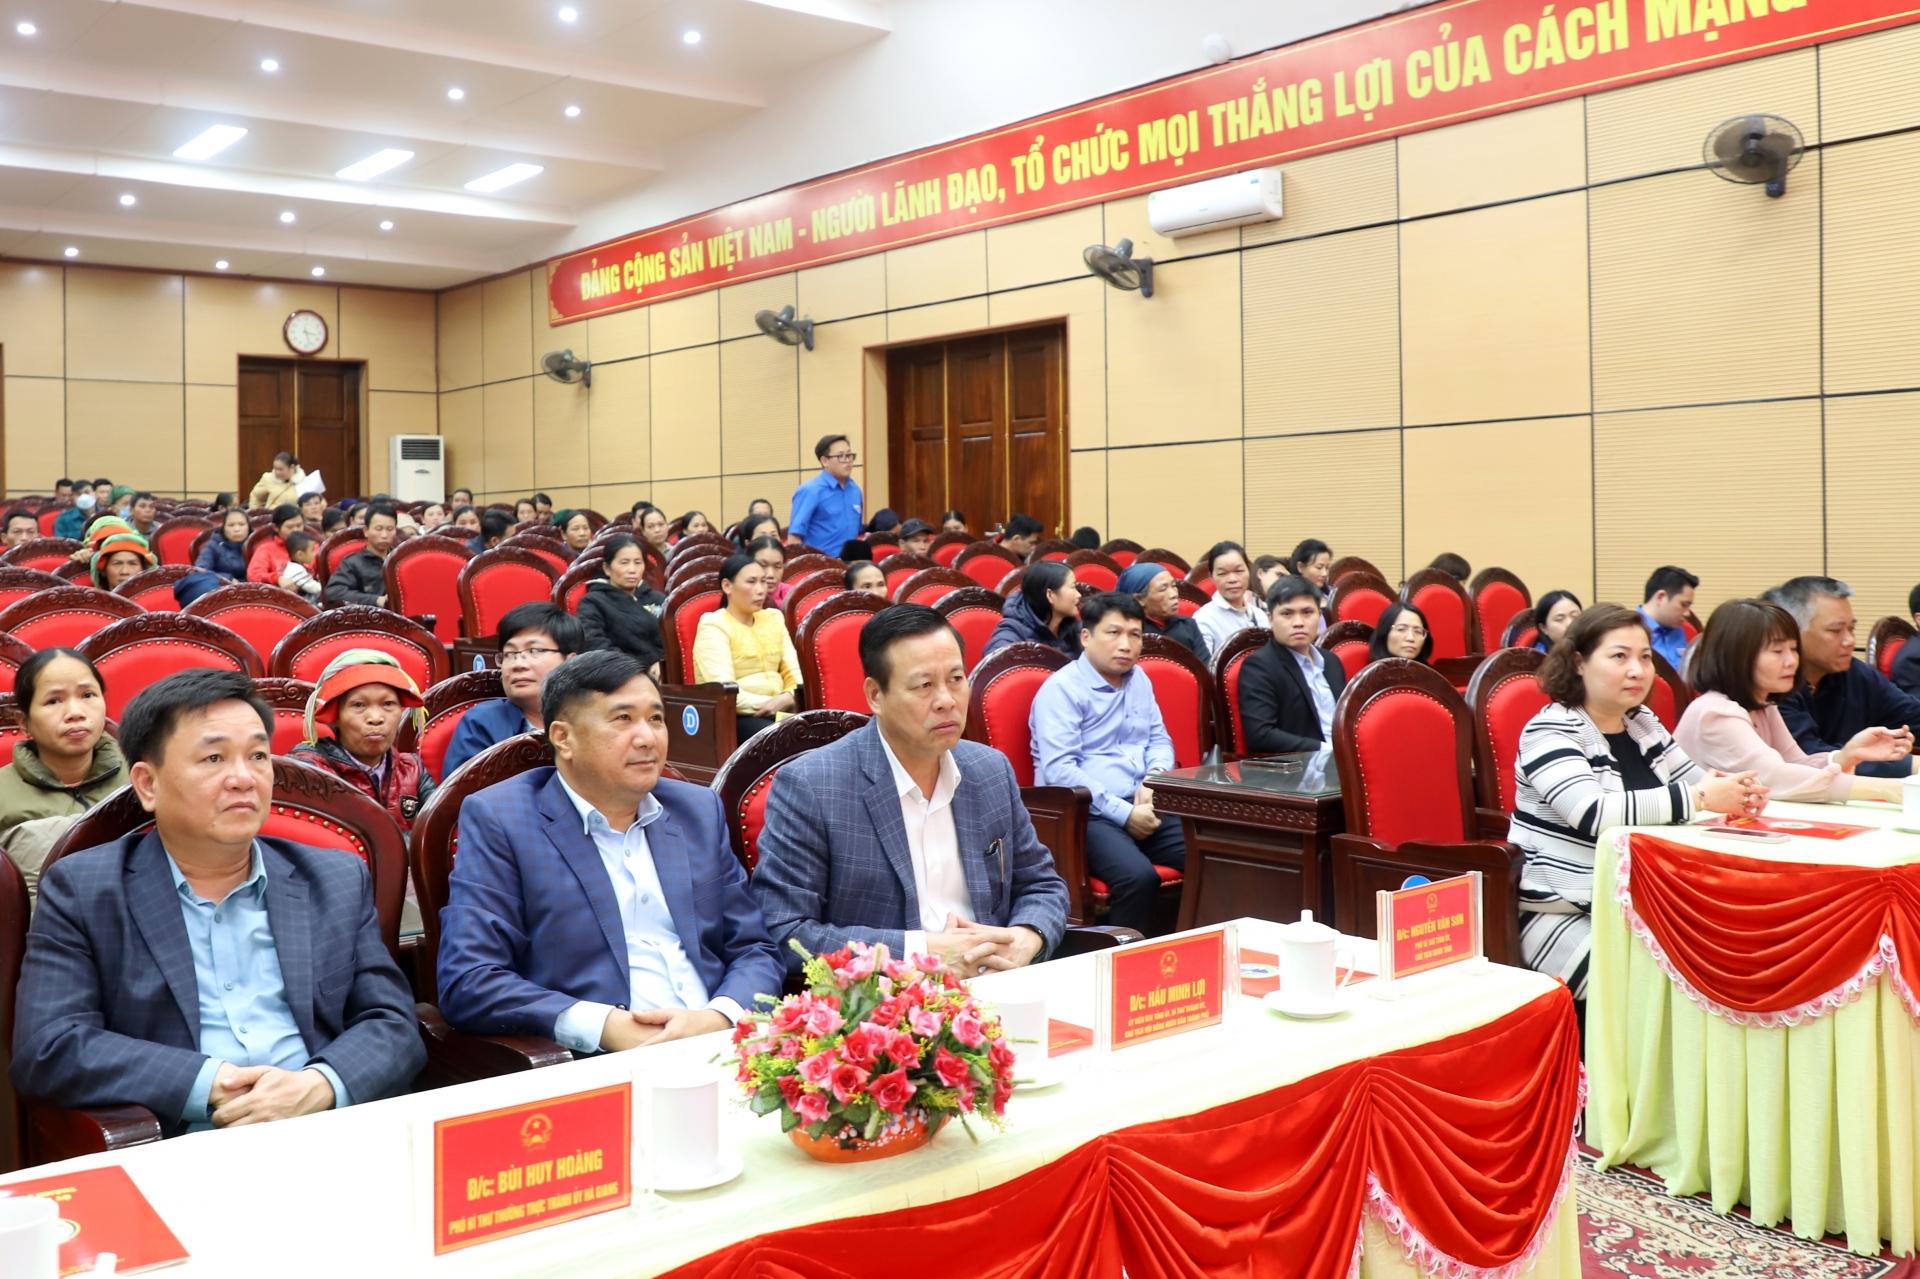 Chủ tịch UBND tỉnh Nguyễn Văn Sơn và các đại biểu dự buổi tặng quà.